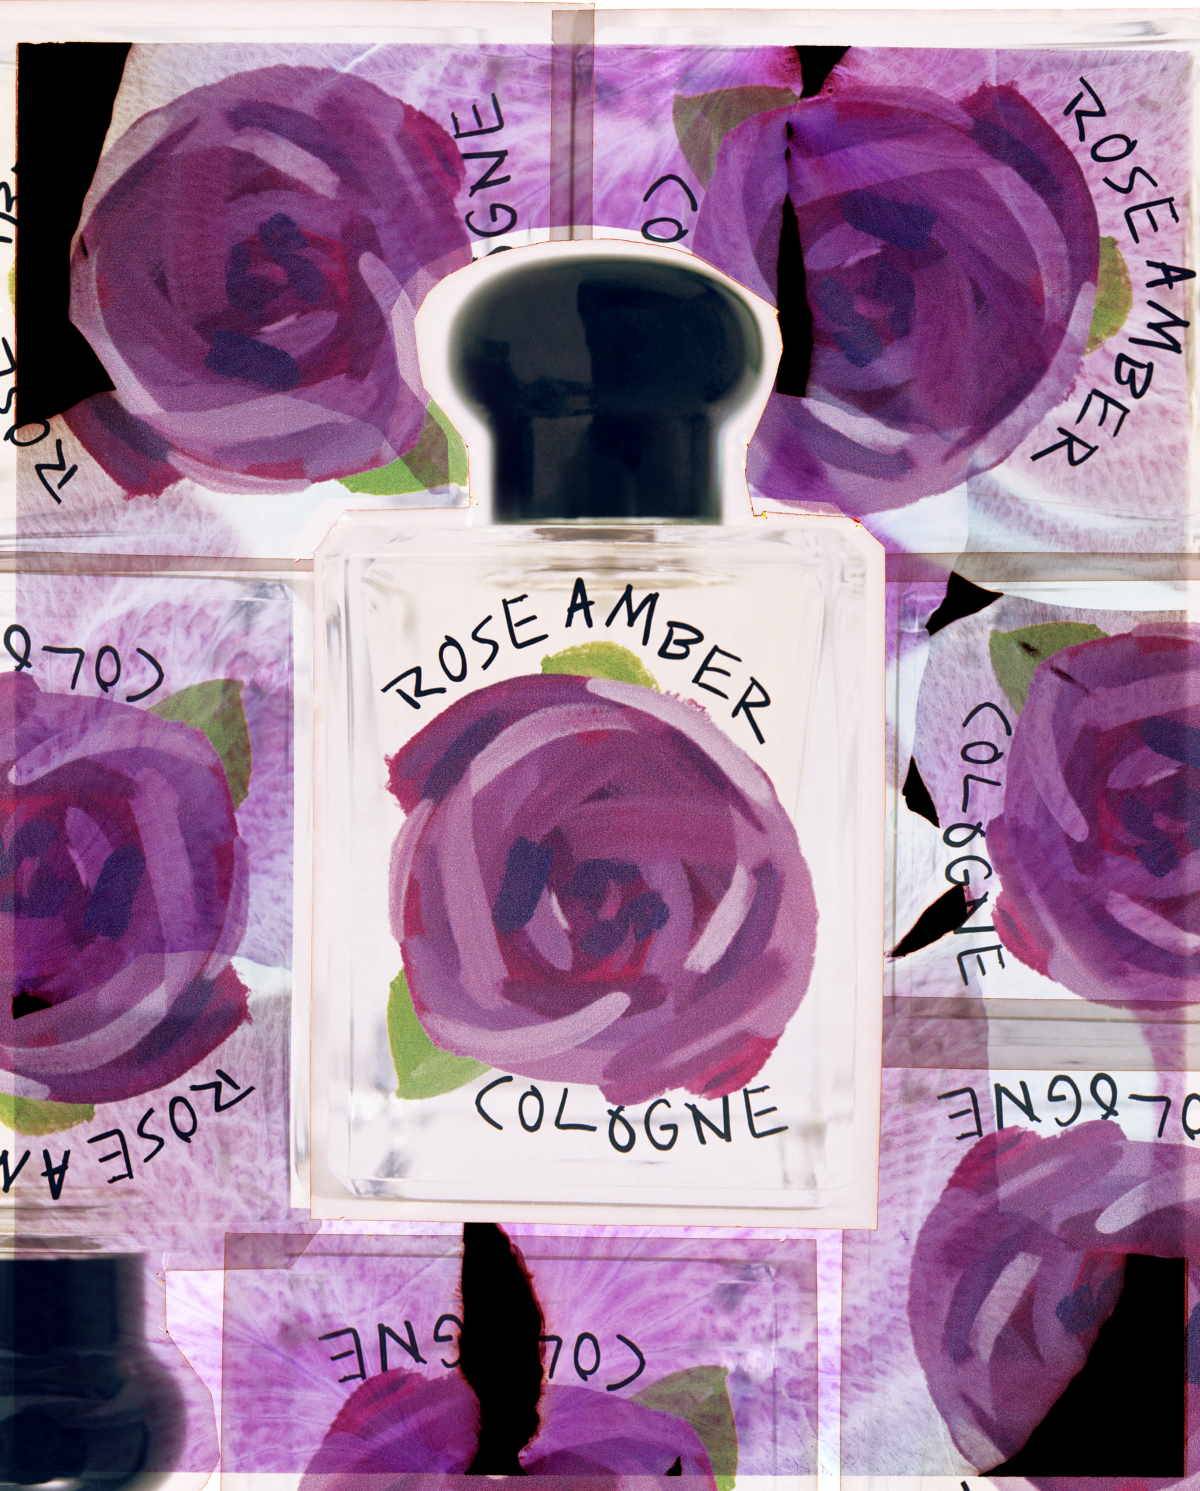 Limitowana kolekcja różanych zapachów od Jo Malone London. Marka Jo Malone London przedstawia trzy nowe różane zapachy idealne na walentynki: Rose Blush Cologne, Rose & Magnolia Cologne i Rose Amber Cologne. 